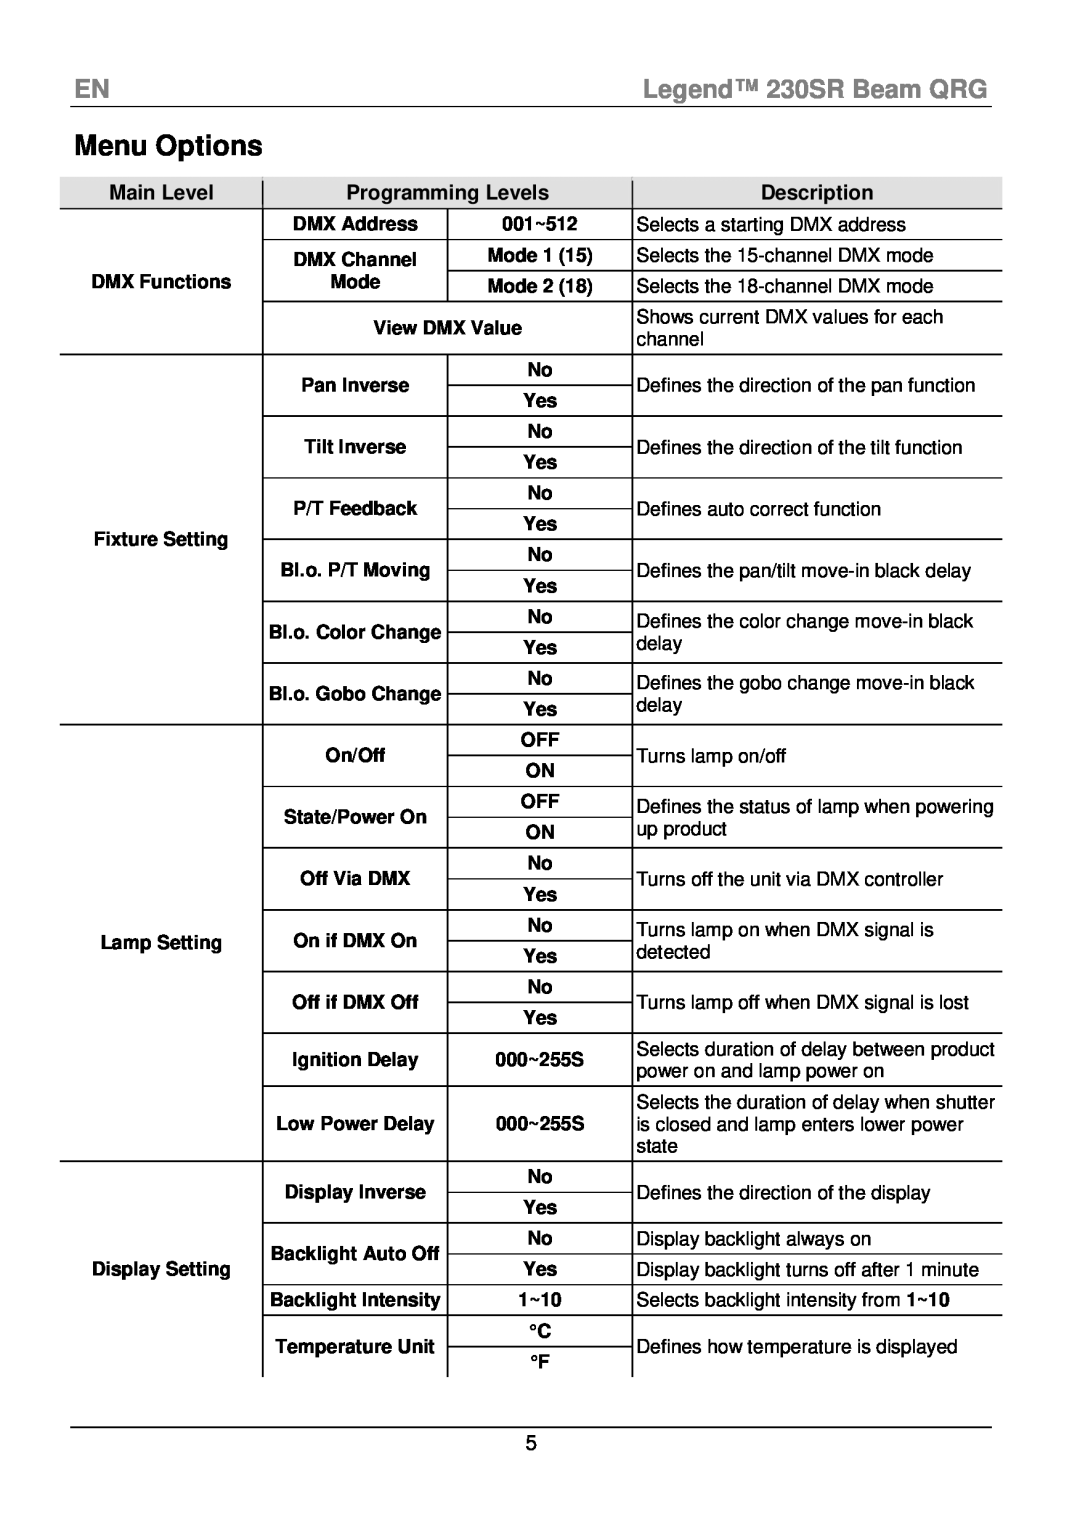 Chauvet manual Menu Options, ENLegend 230SR Beam QRG, Description 